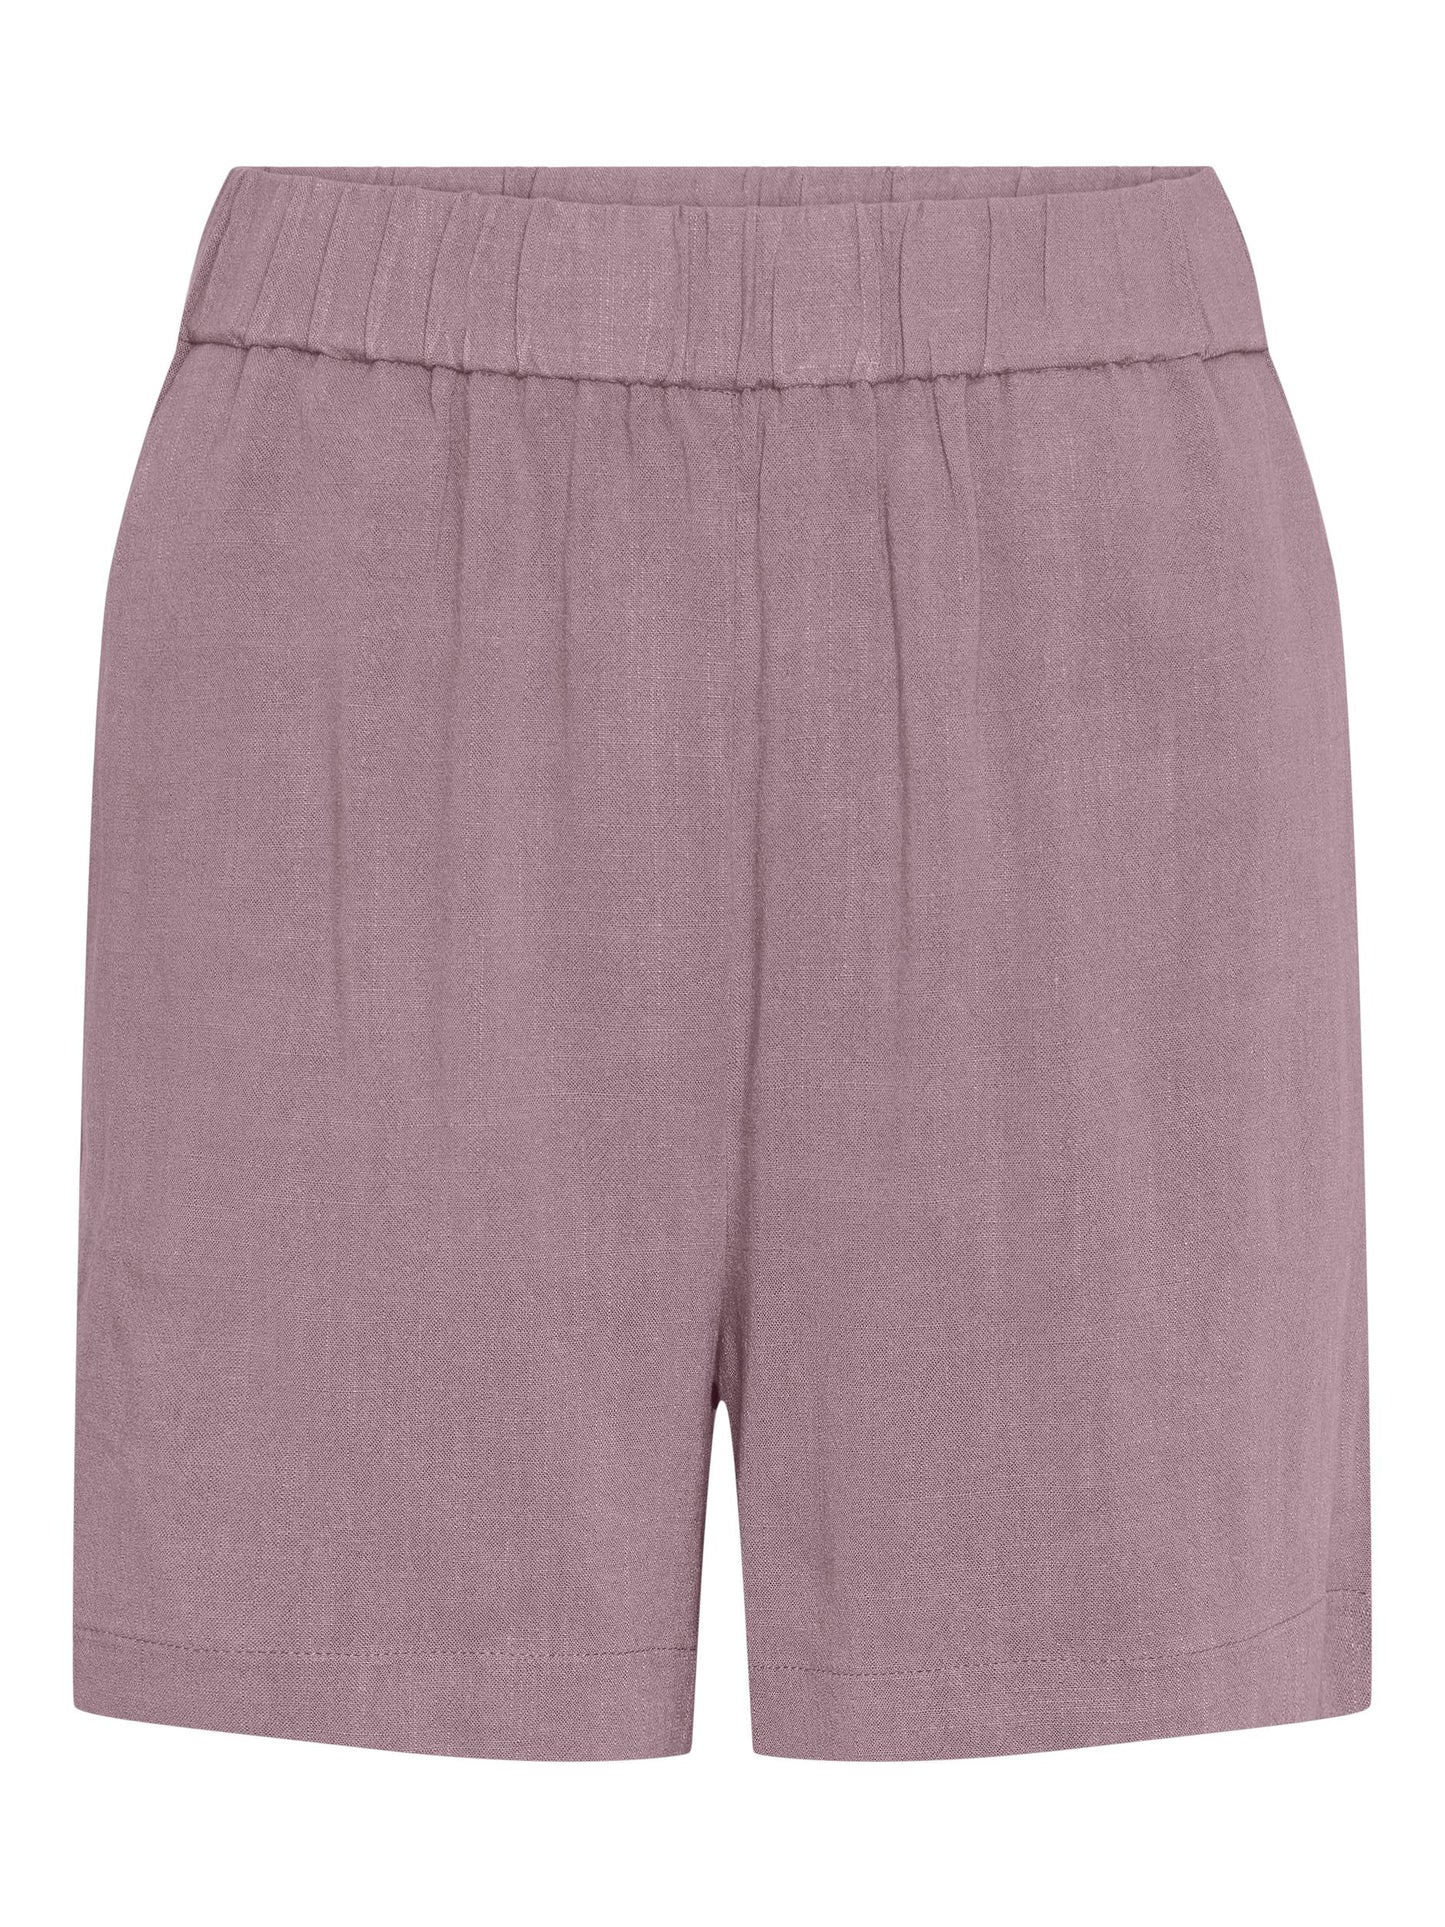 
                  
                    PCVINSTY Woodrose Shorts
                  
                